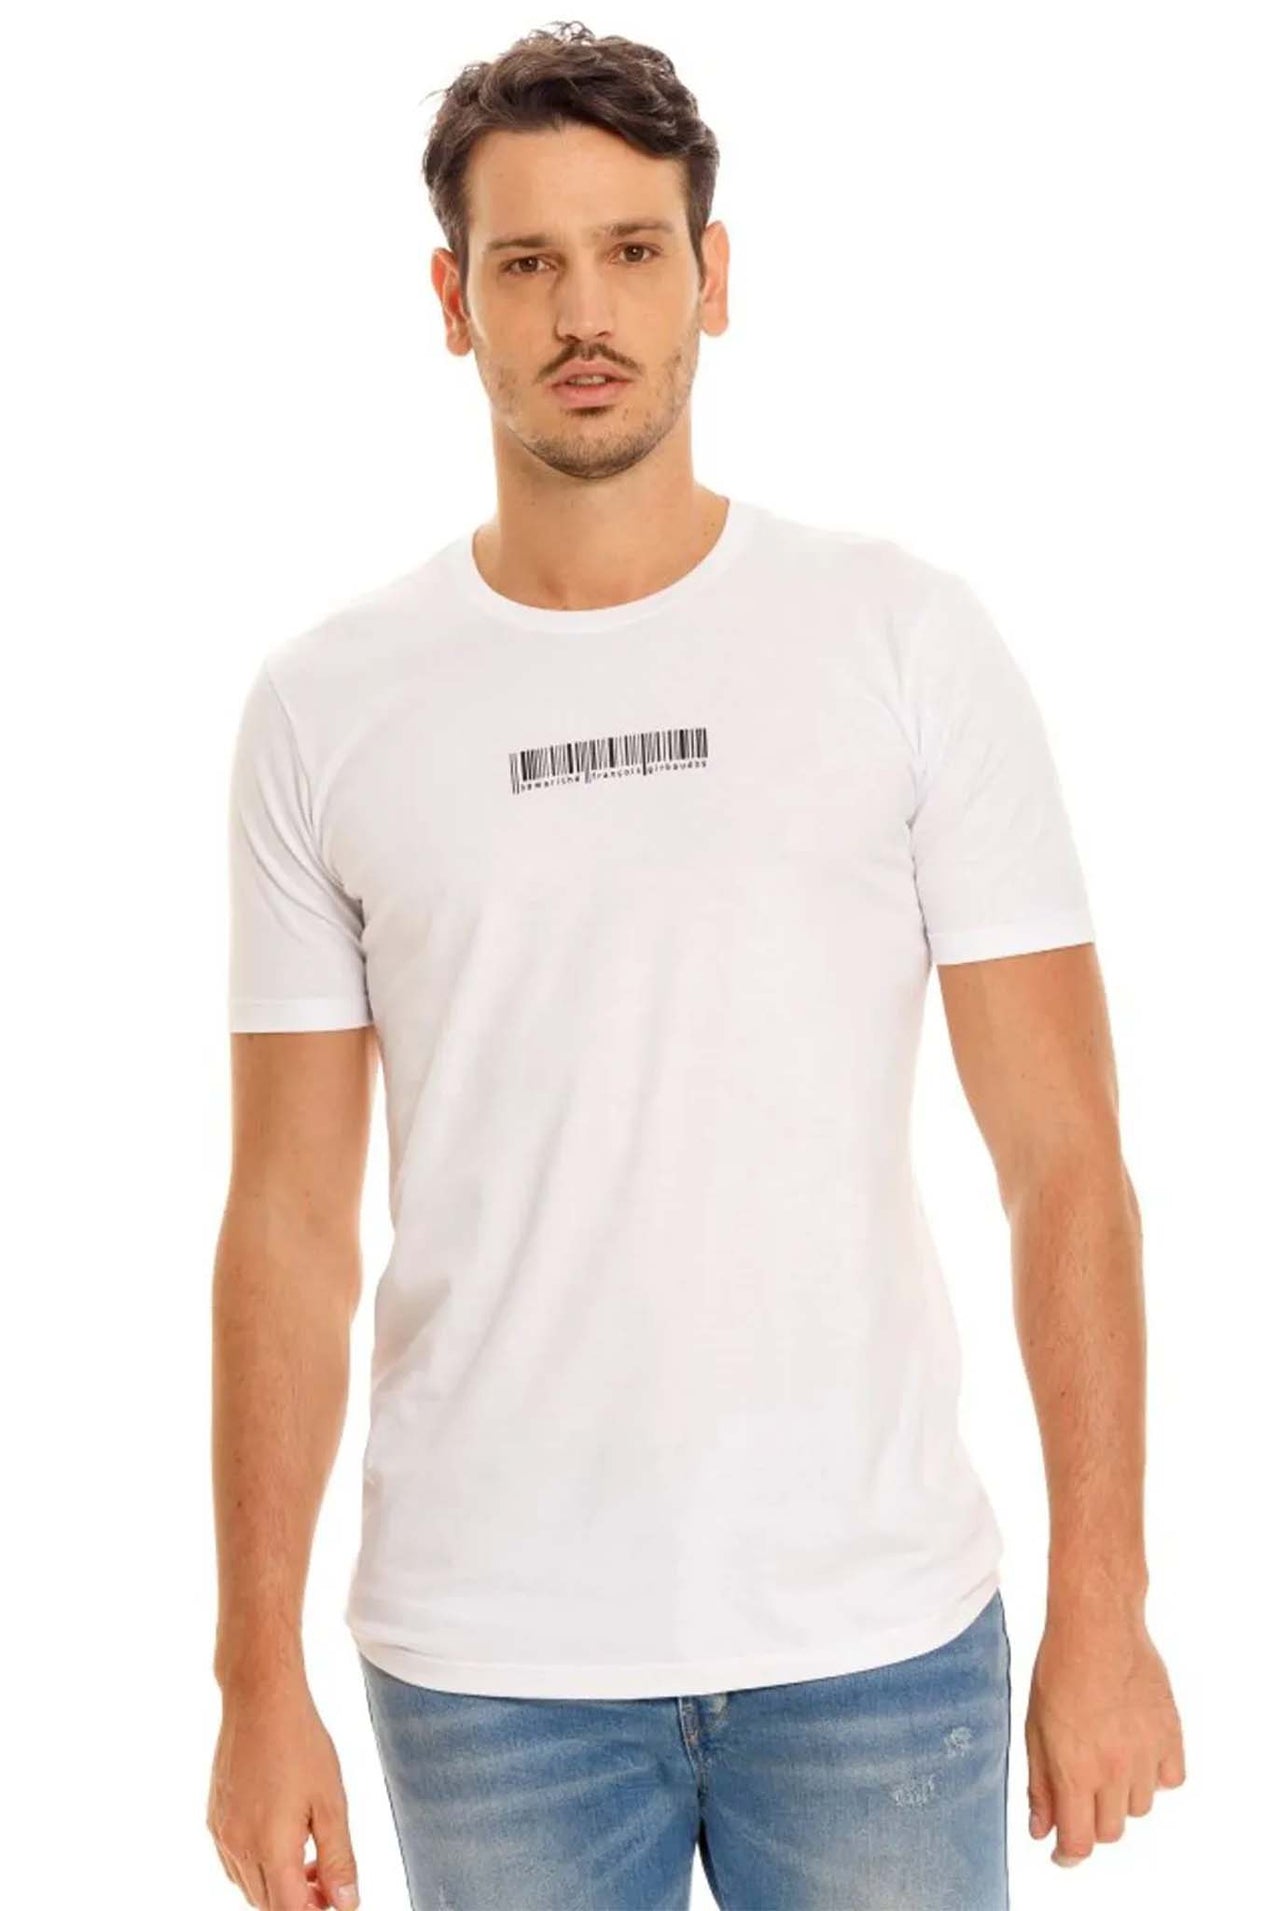 Camiseta Girbaud 2097 Blanco